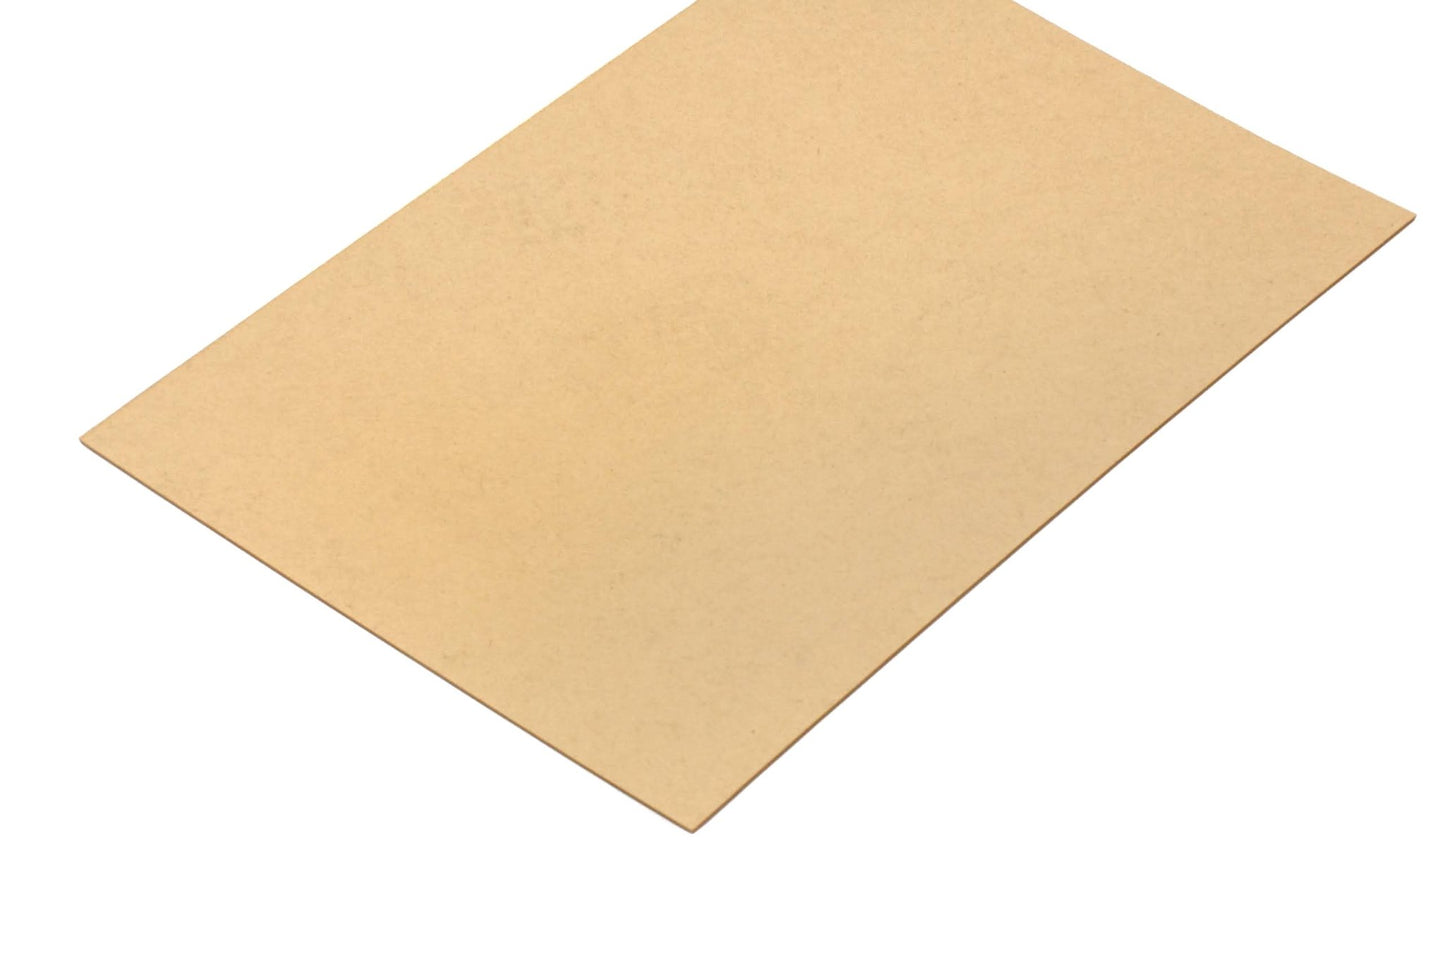 Pakkingpapier 0.5 mm - Lasersheets